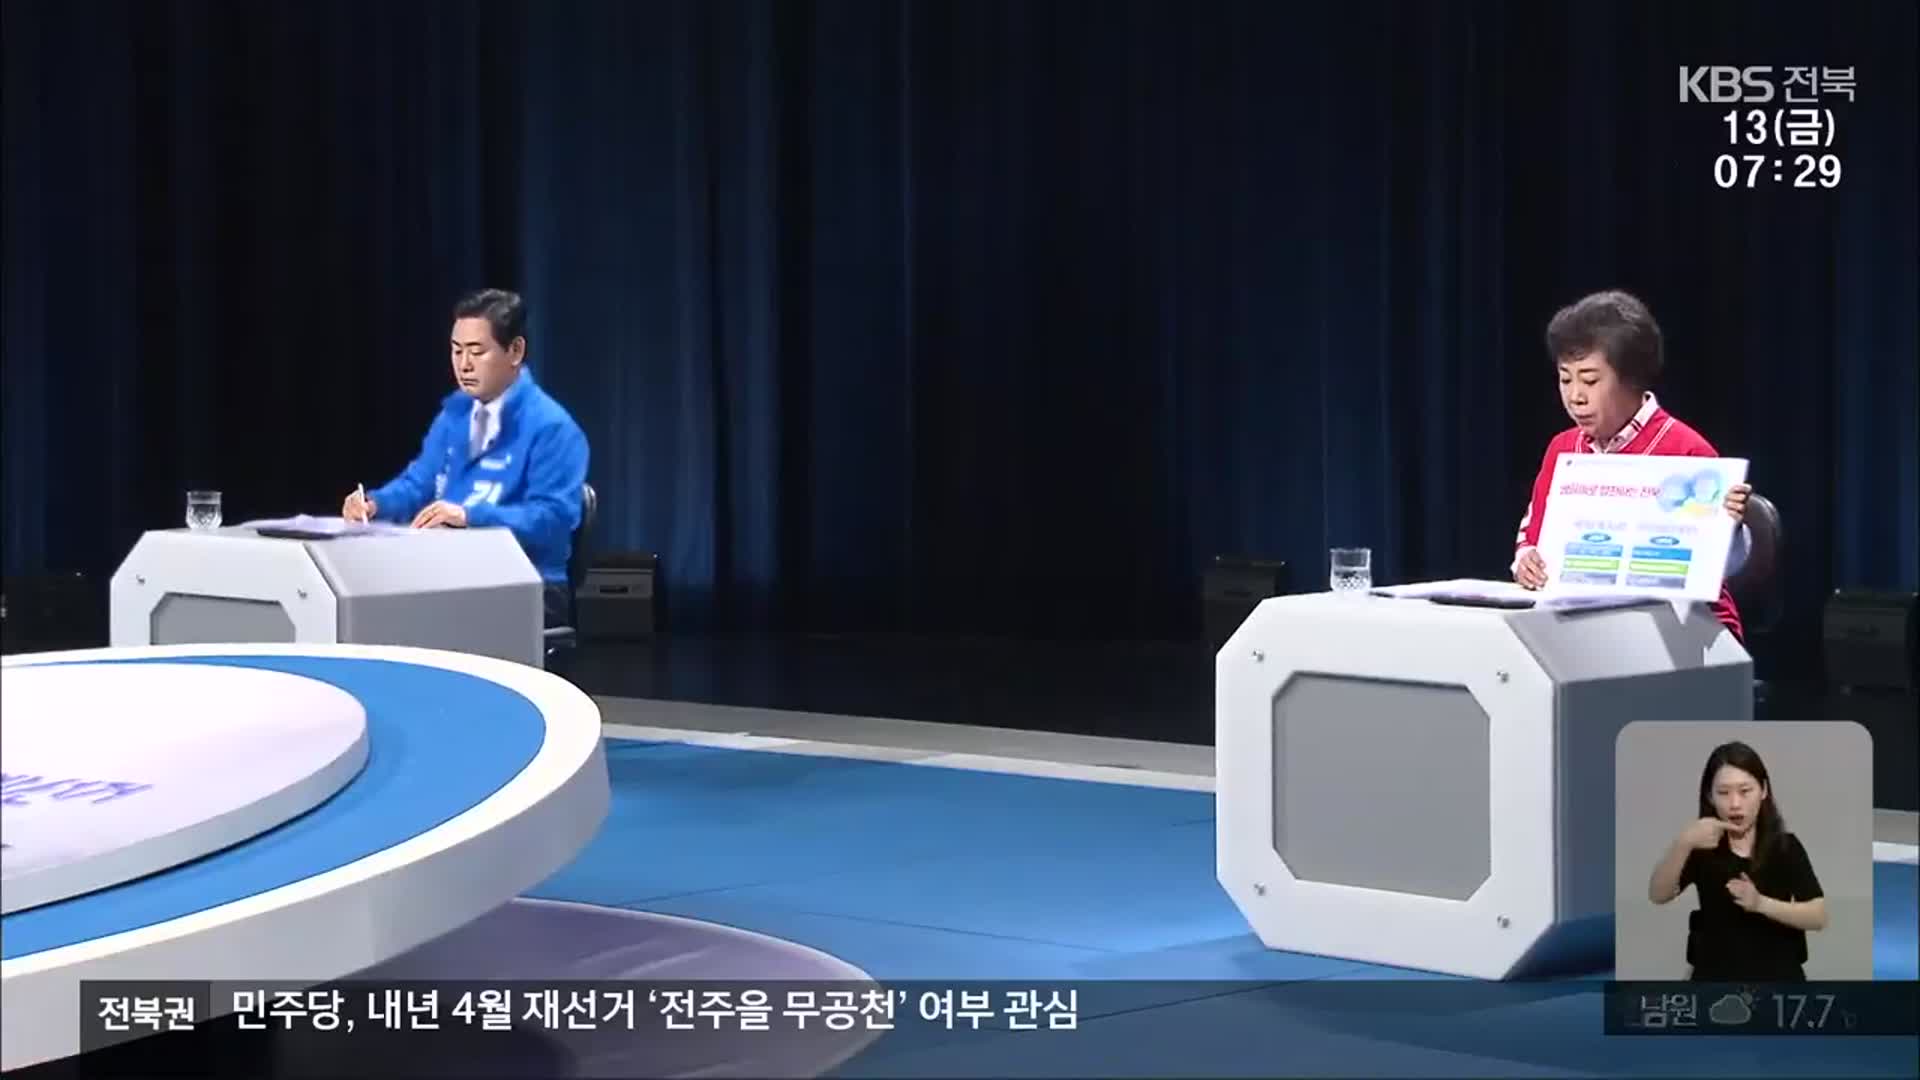 [전북] 전북도지사 토론회서 주요 공약 ‘공방’…“내가 적임자”